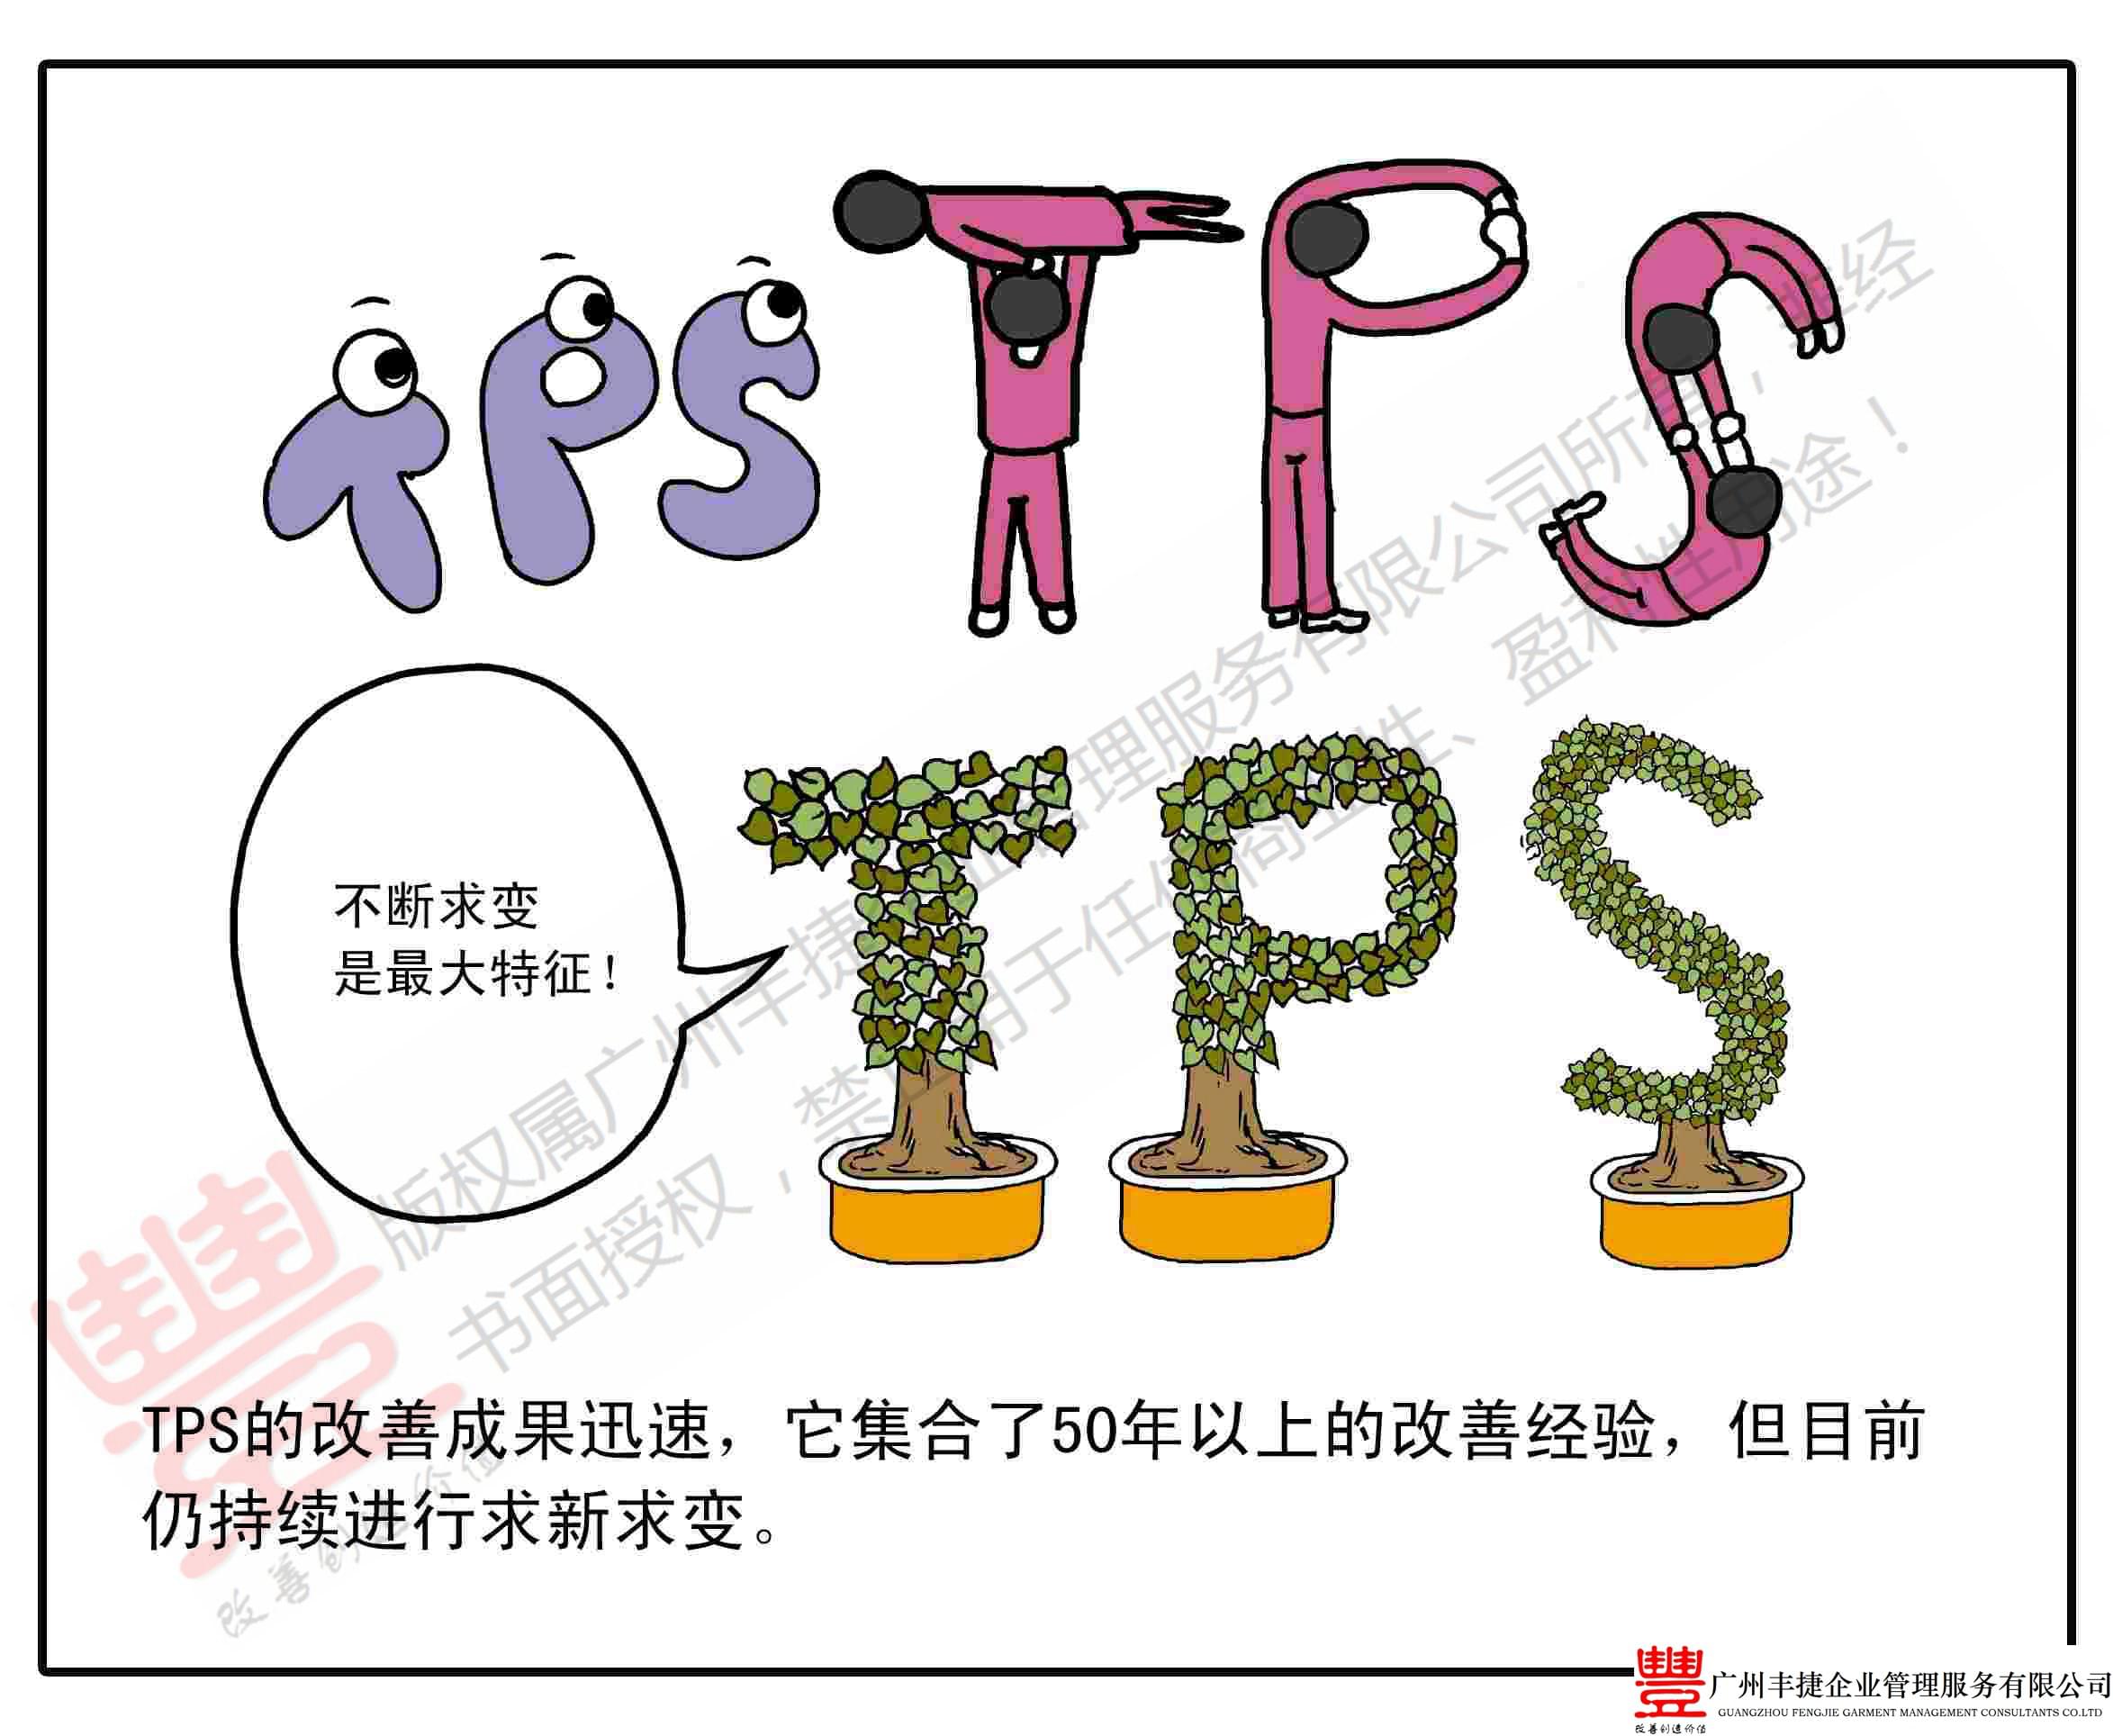 TPS改善持续求新求变,丰捷精益管理漫画,丰捷服装精益生产改善项目,广州丰捷企业管理服务有限公司